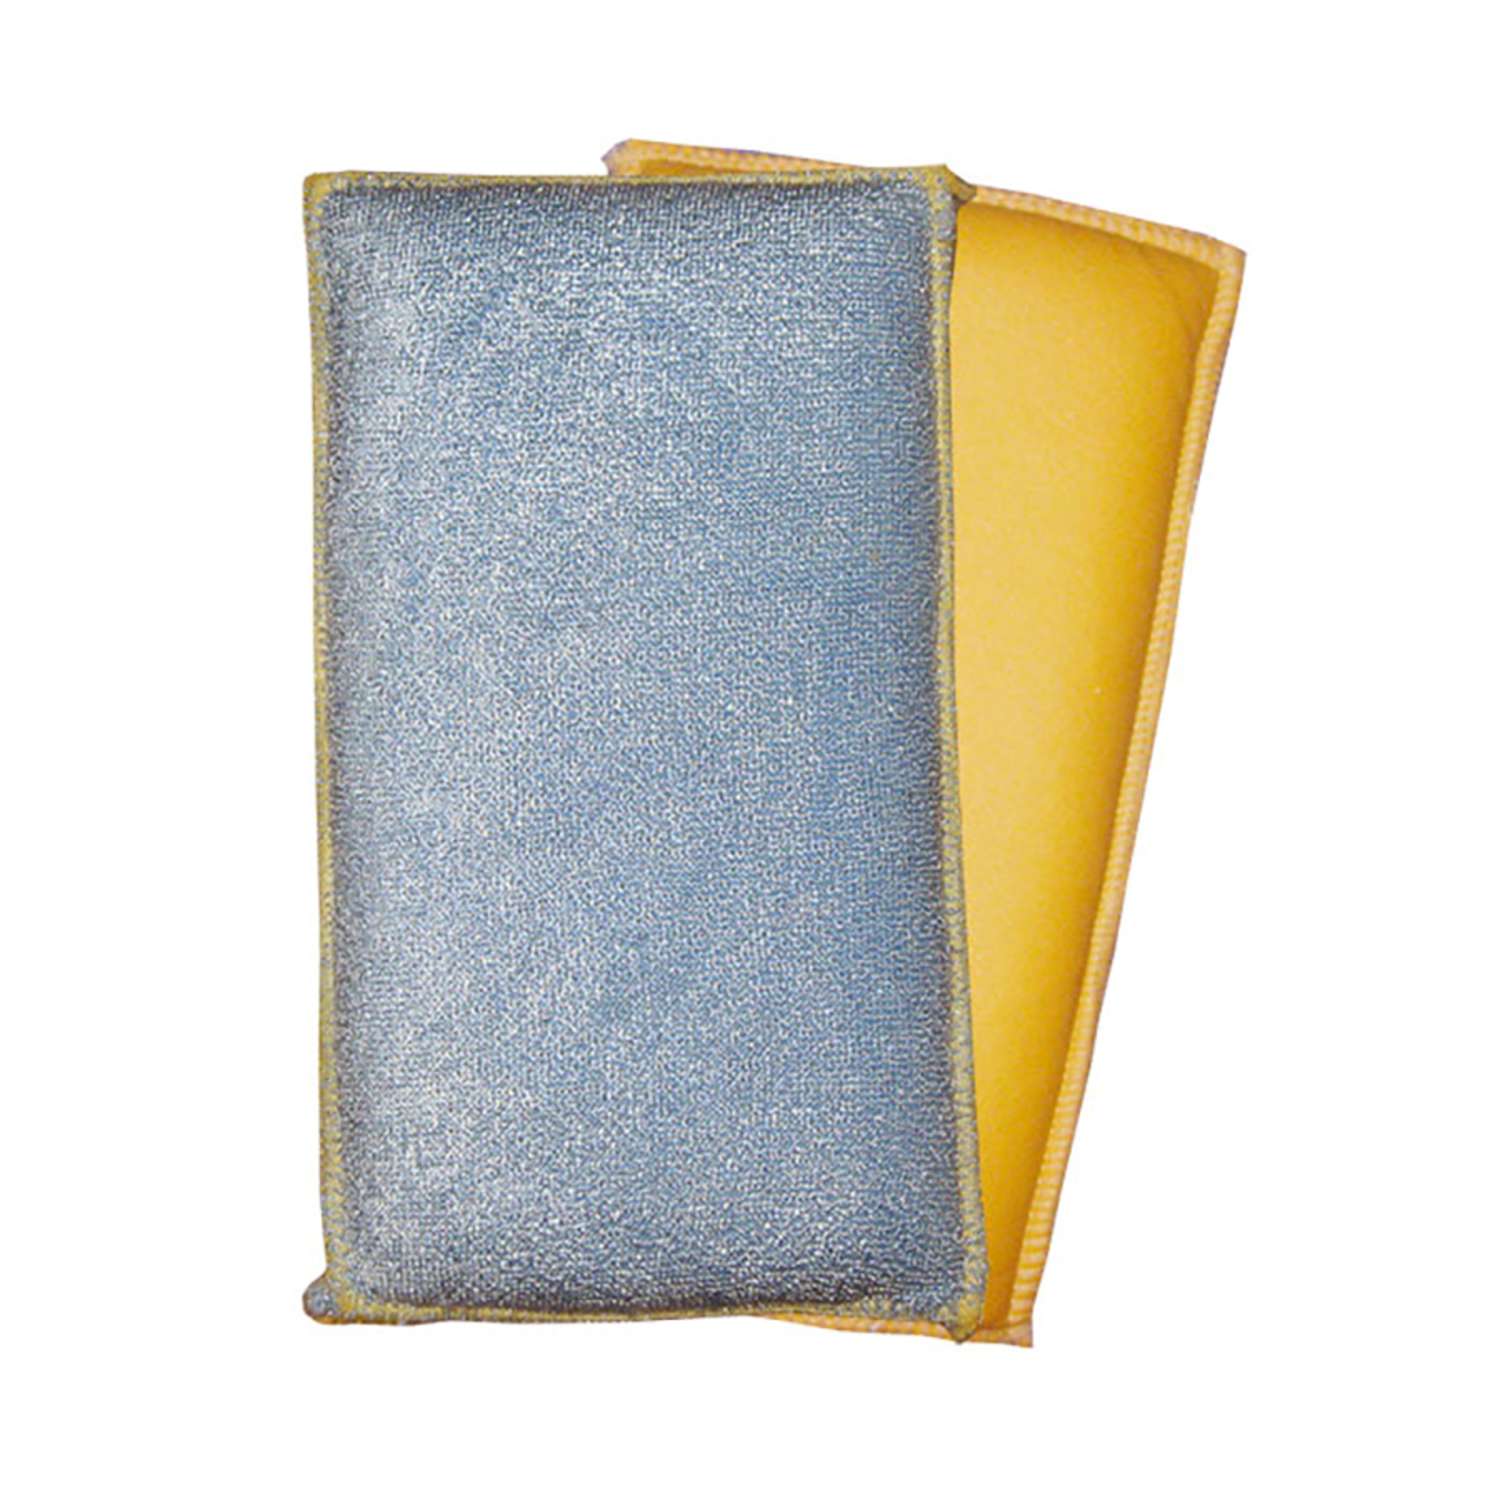  Libman Glass/Dish Sponge, Pack of 1 : Health & Household